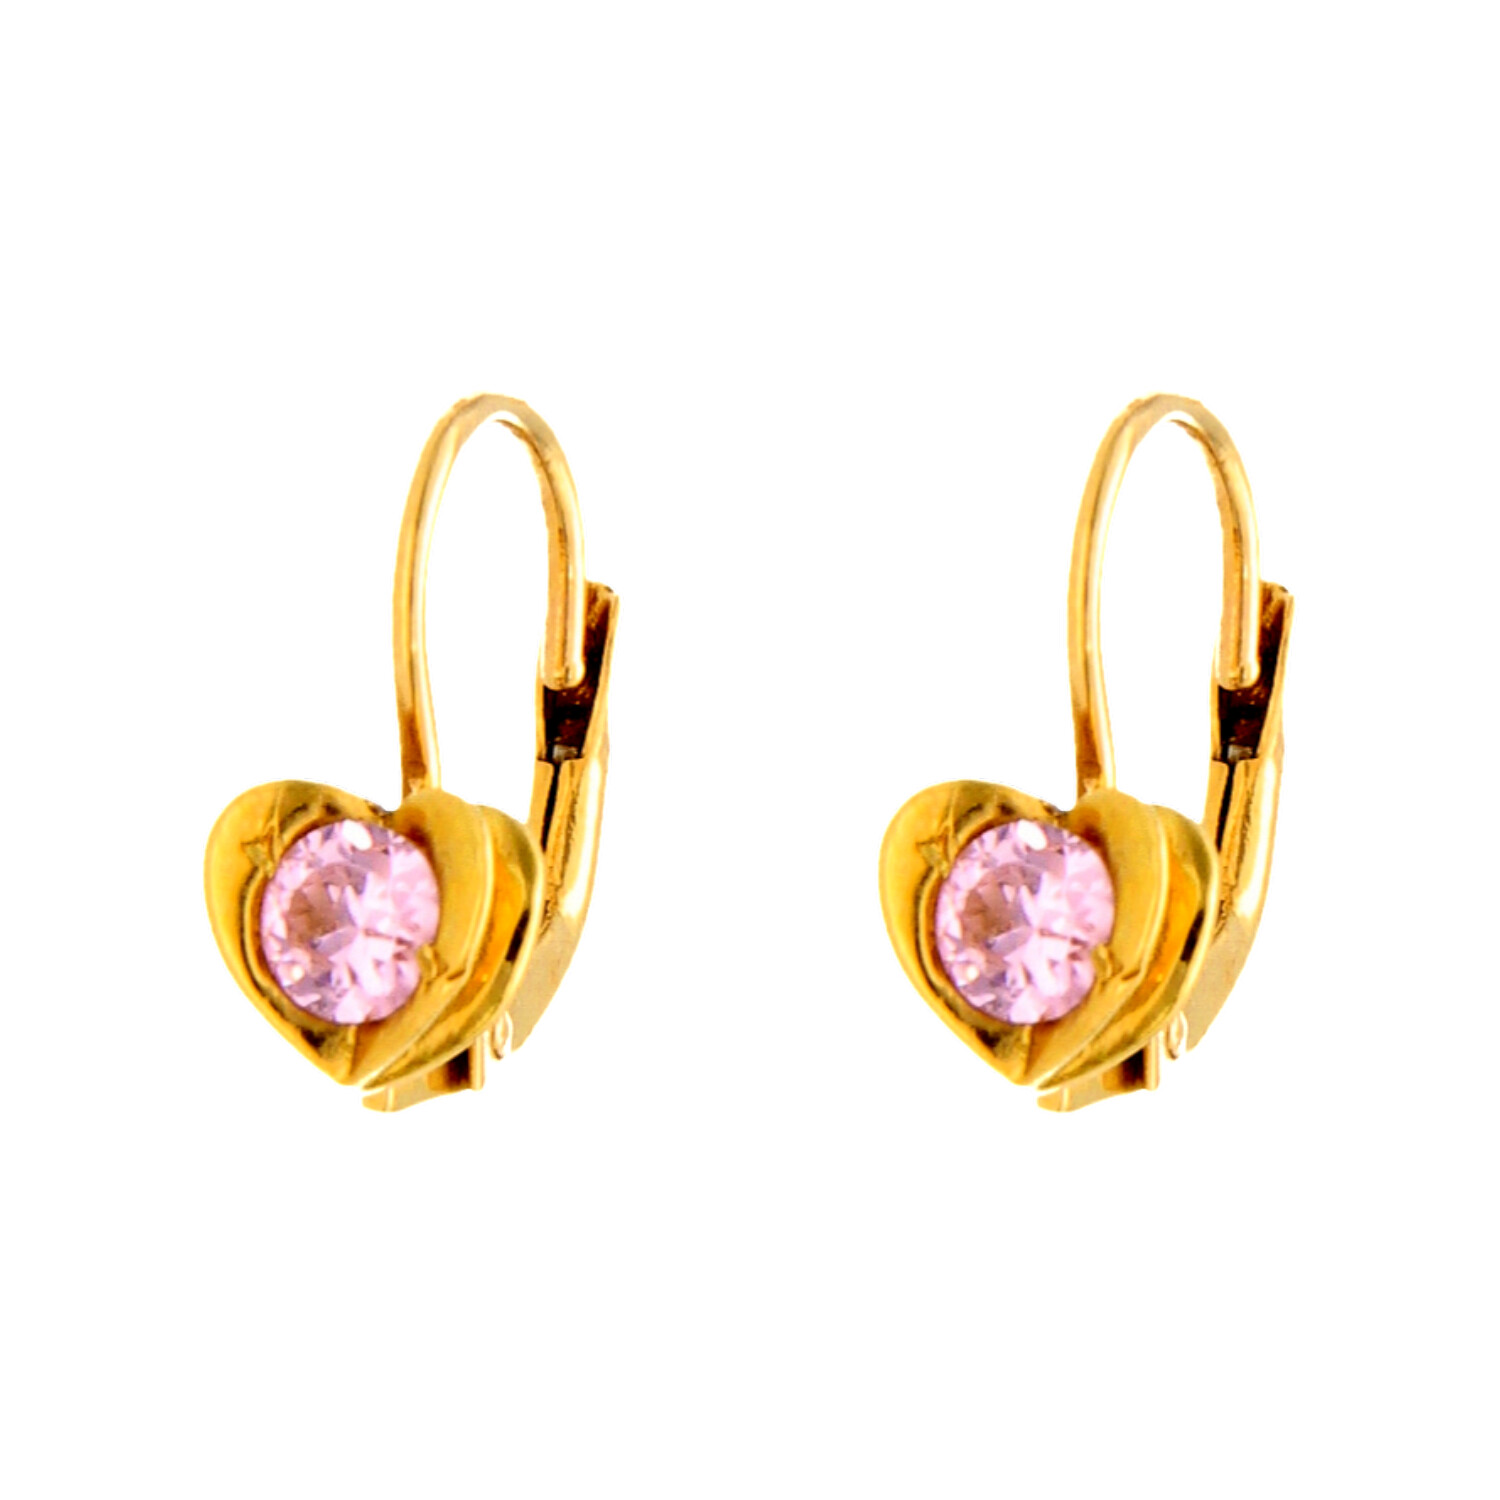 Coppia orecchini oro giallo a monachella con Zirconi rosa